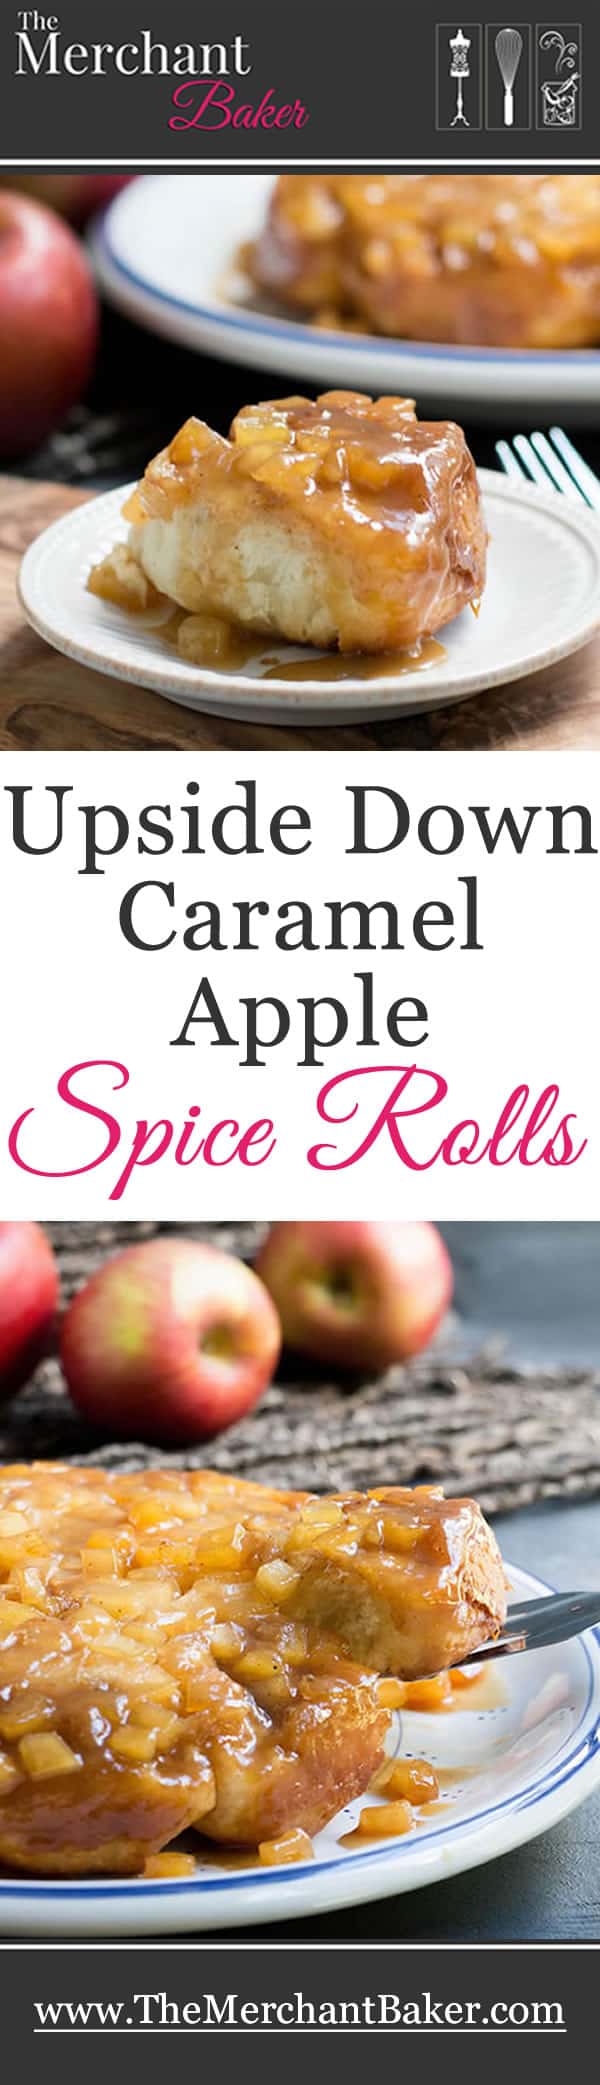 Upside Down Caramel Apple Spice Rolls